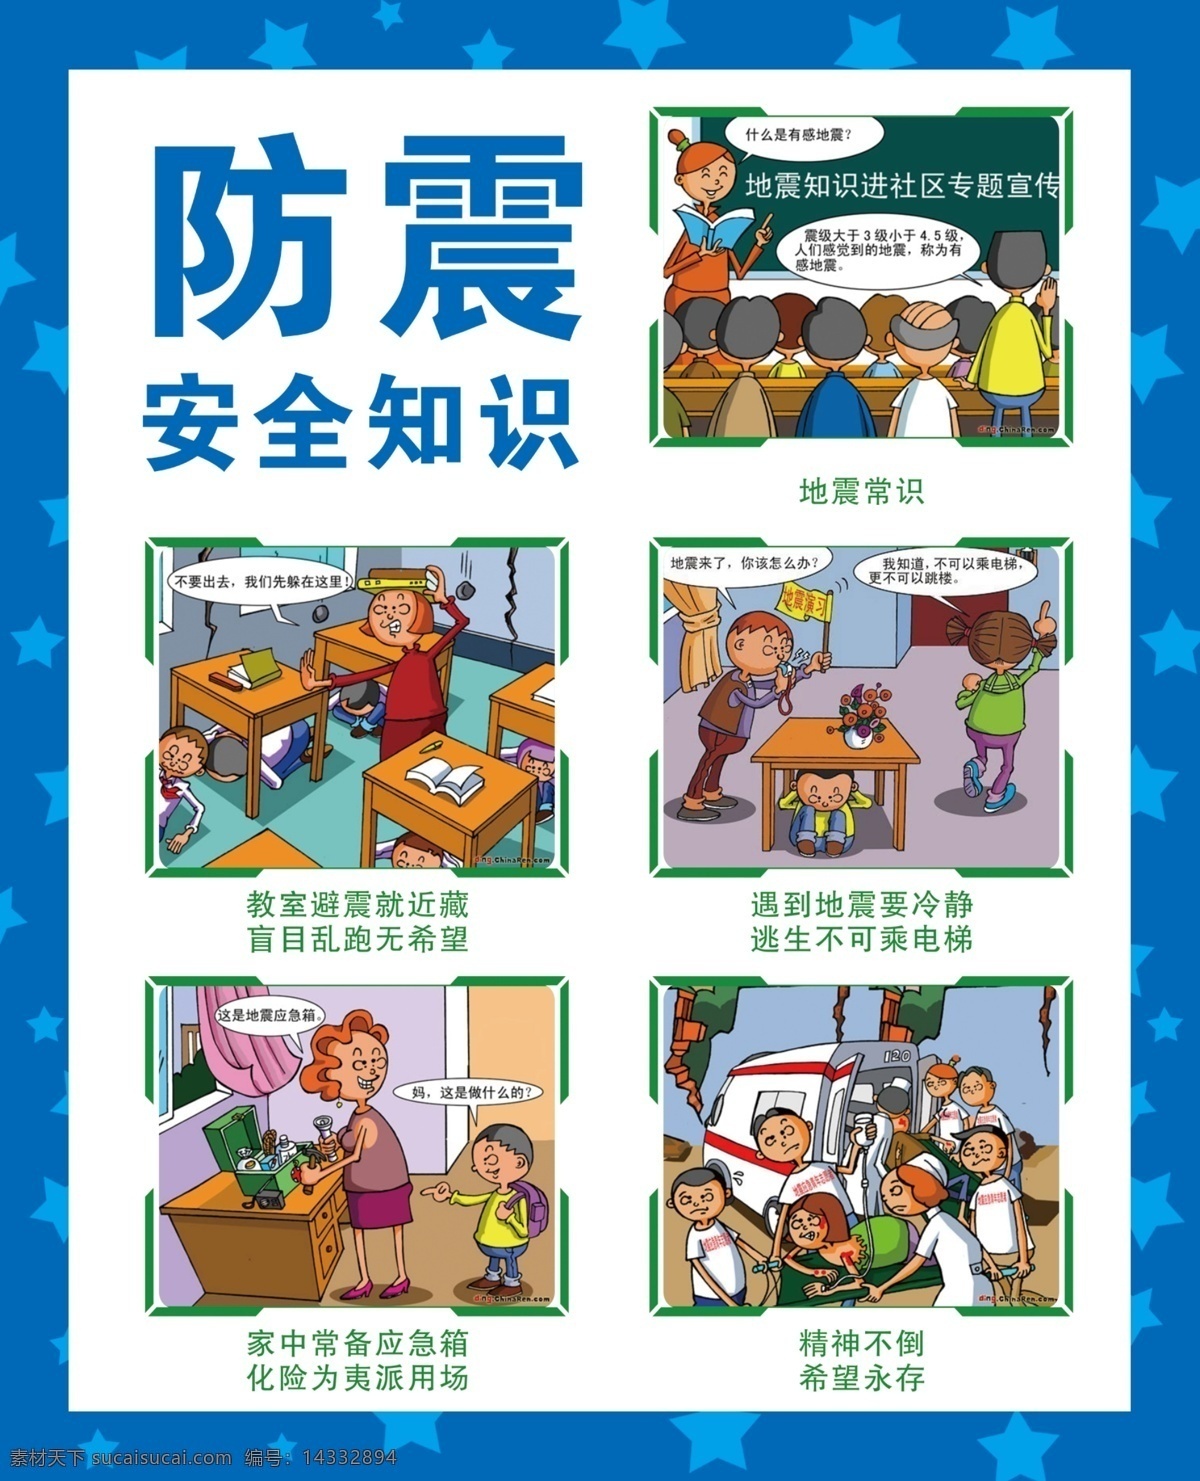 防震 安全知识 卡通 幼儿园教育 预防地震 安全教育 展板